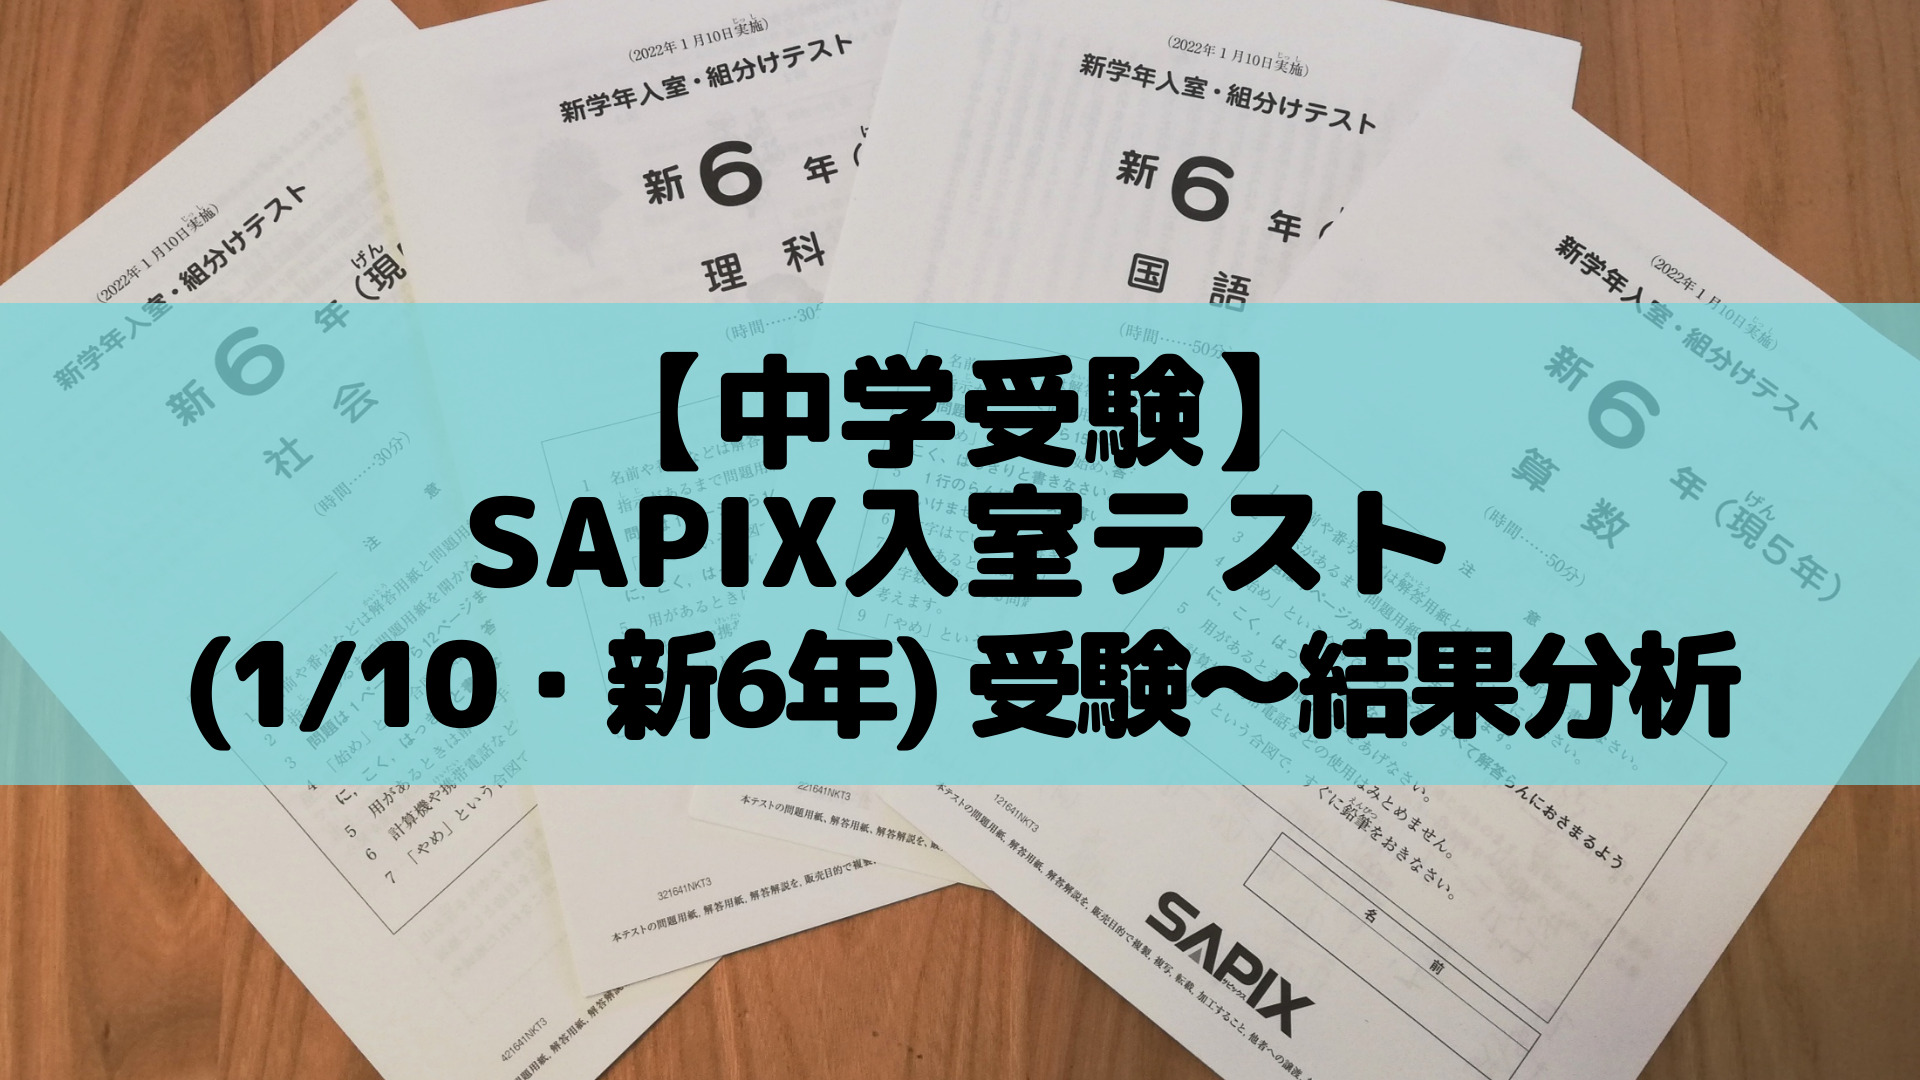 中学受験】SAPIX入室テスト(1/10・新6年) 受験〜結果分析 | ポチたま